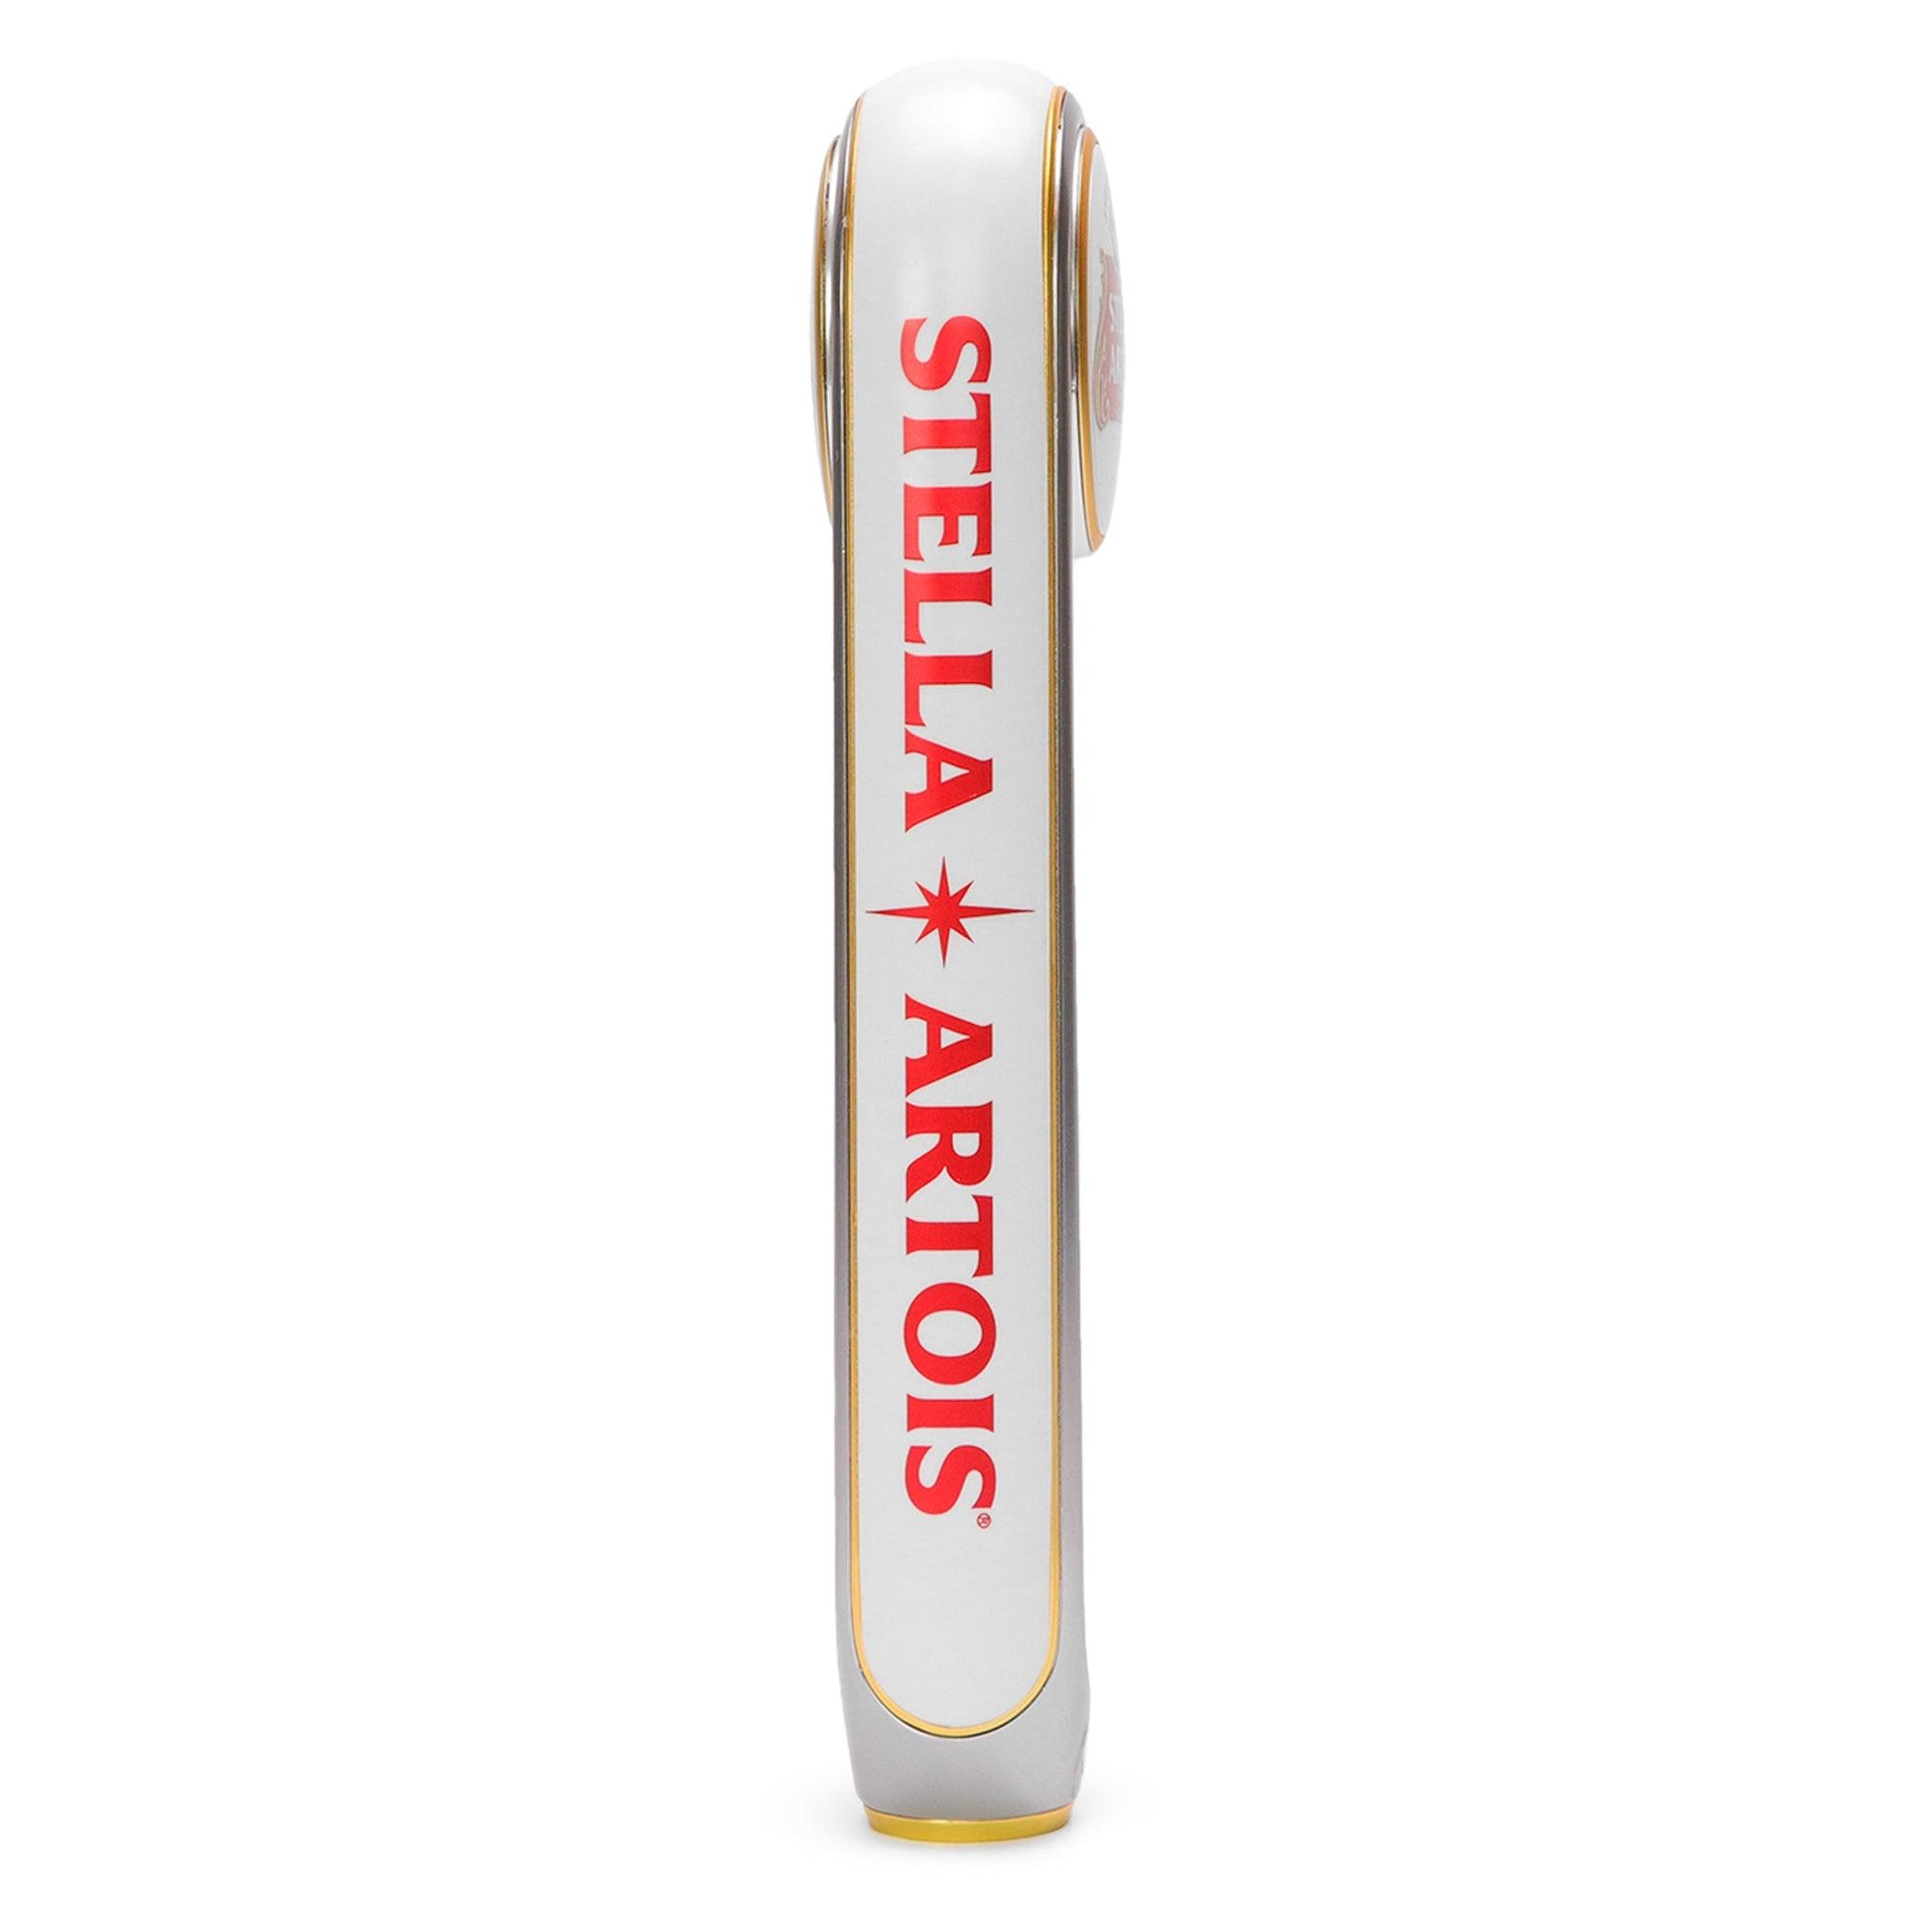 "Stella Artois" With logo written across back of tap handle